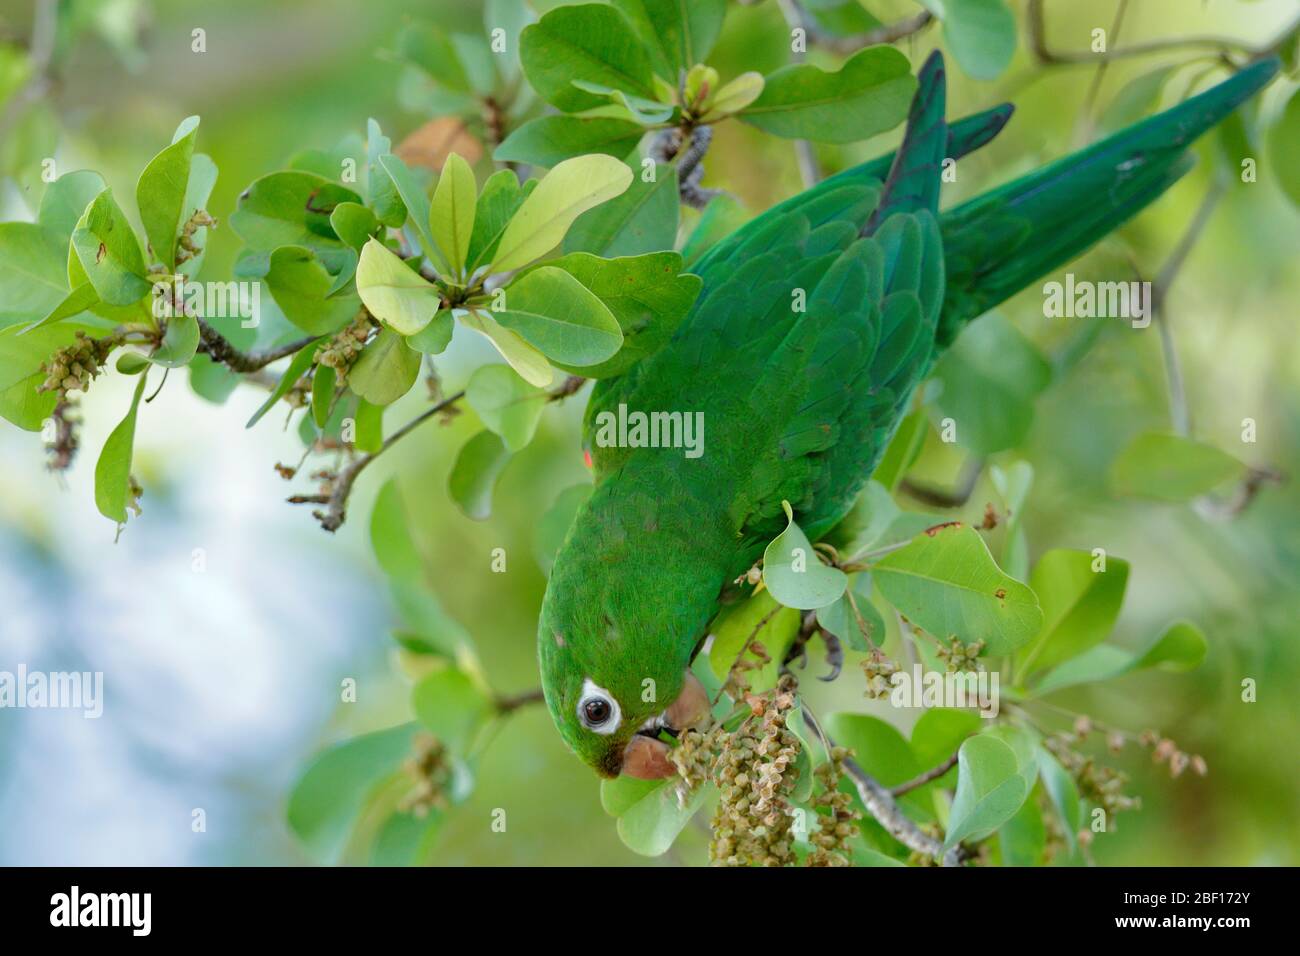 Il pappagallo ispaniolano, o perico, è una specie di pappagallo della famiglia Psittacidae. È endemica dell'isola di Hispaniola. Foto Stock